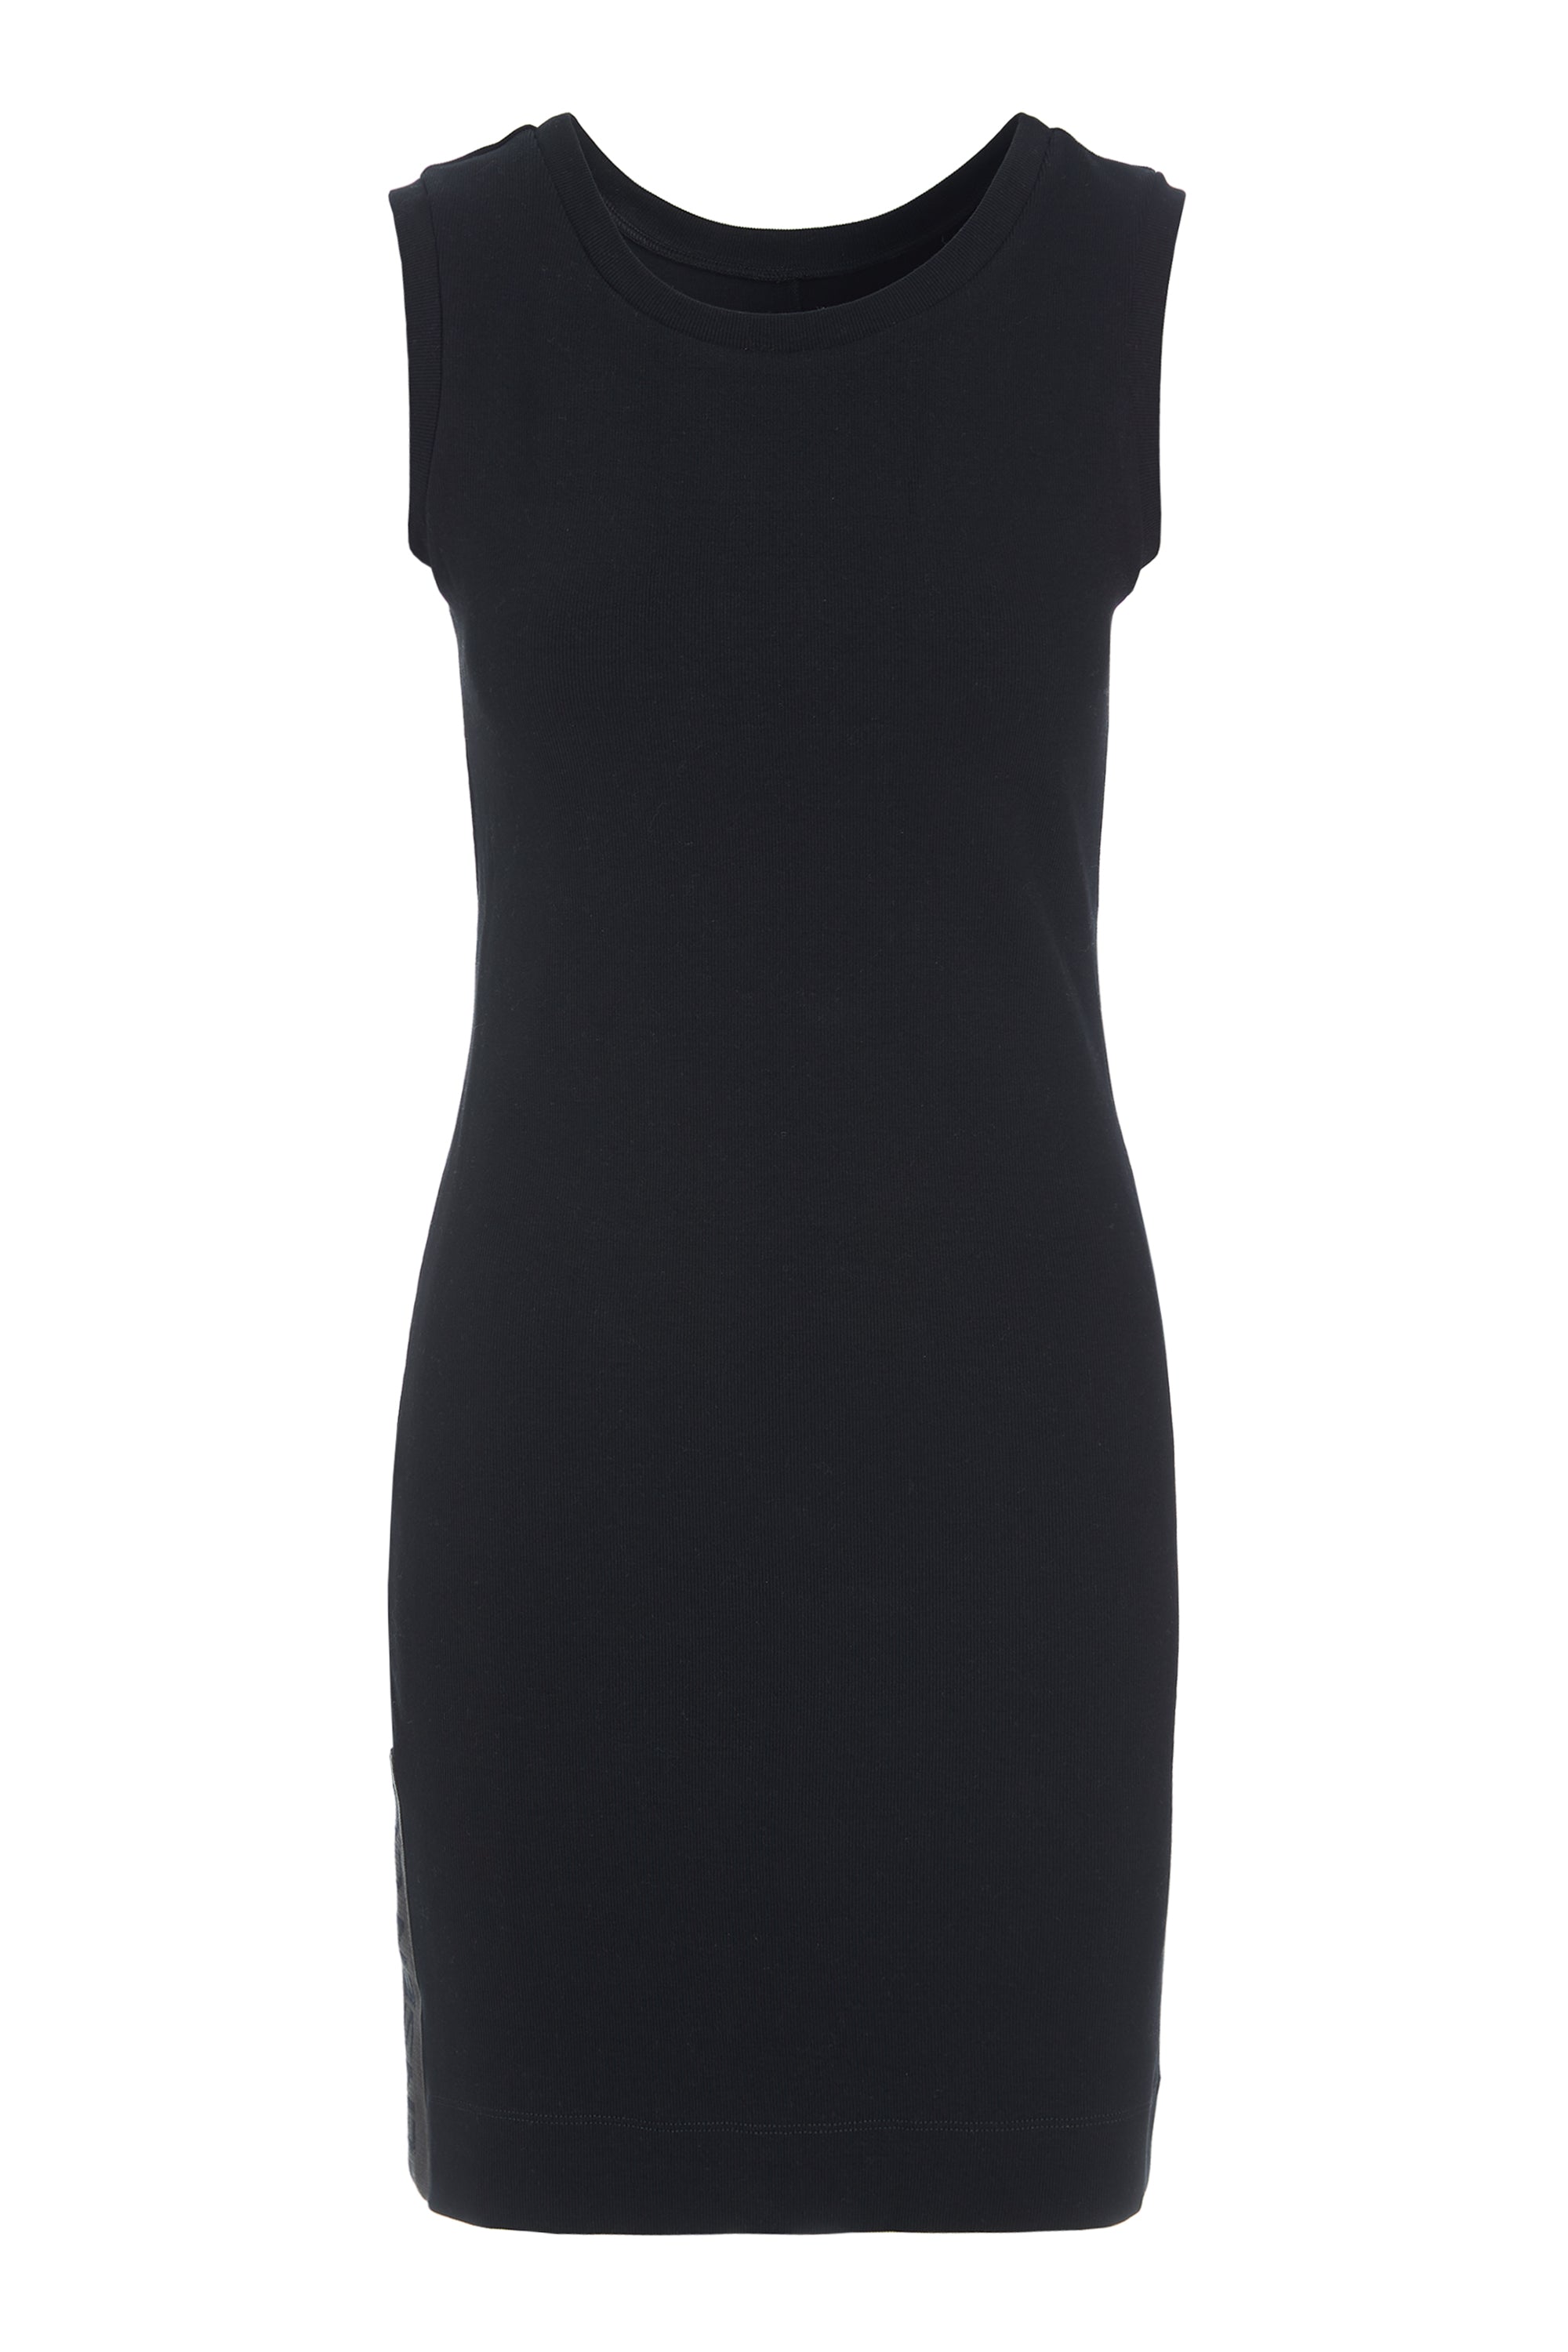 HENRIETTE STEFFENSEN COPENHAGEN KLEID - 73001 DRESS cotton BLACK 900